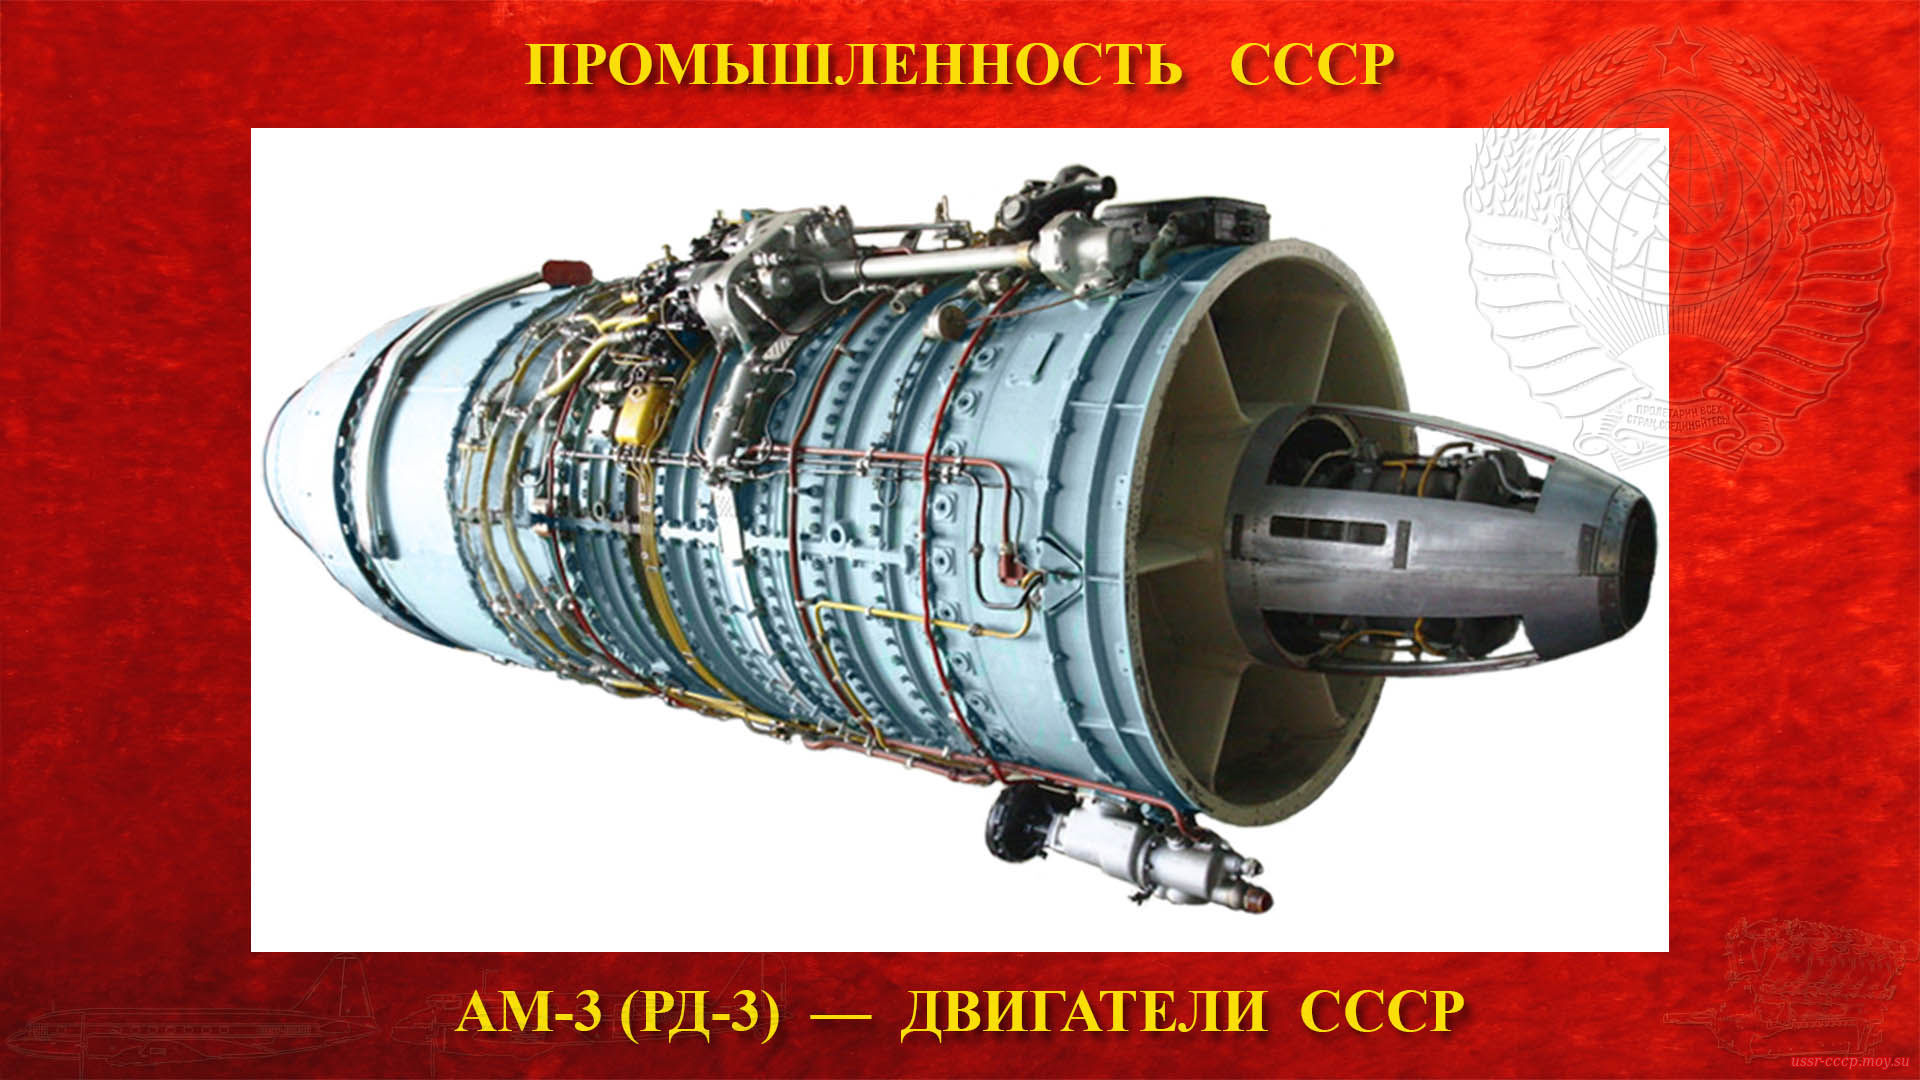 АМ-3 (РД-3) — Советский турбореактивный двигатель СССР (1950)